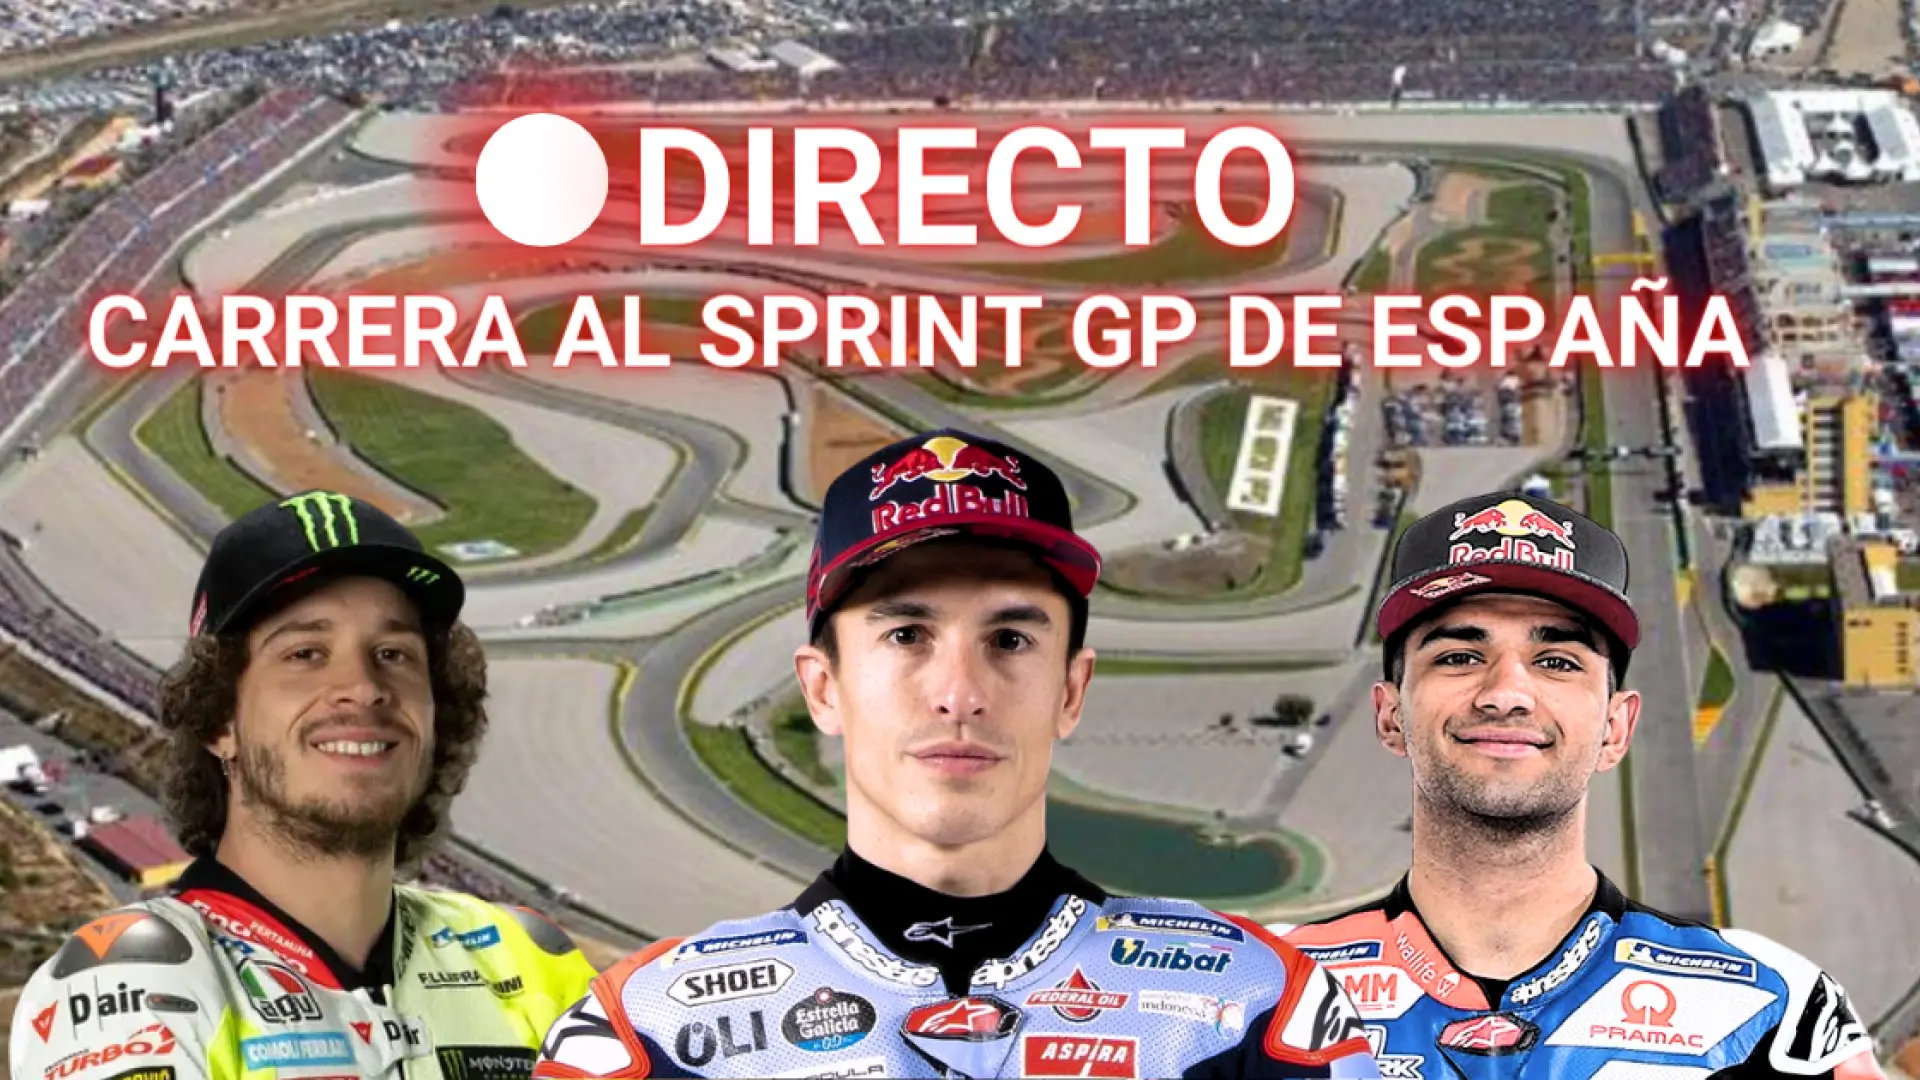 GP de España, en directo: última hora de la carrera al sprint y de Marc Márquez en Jerez